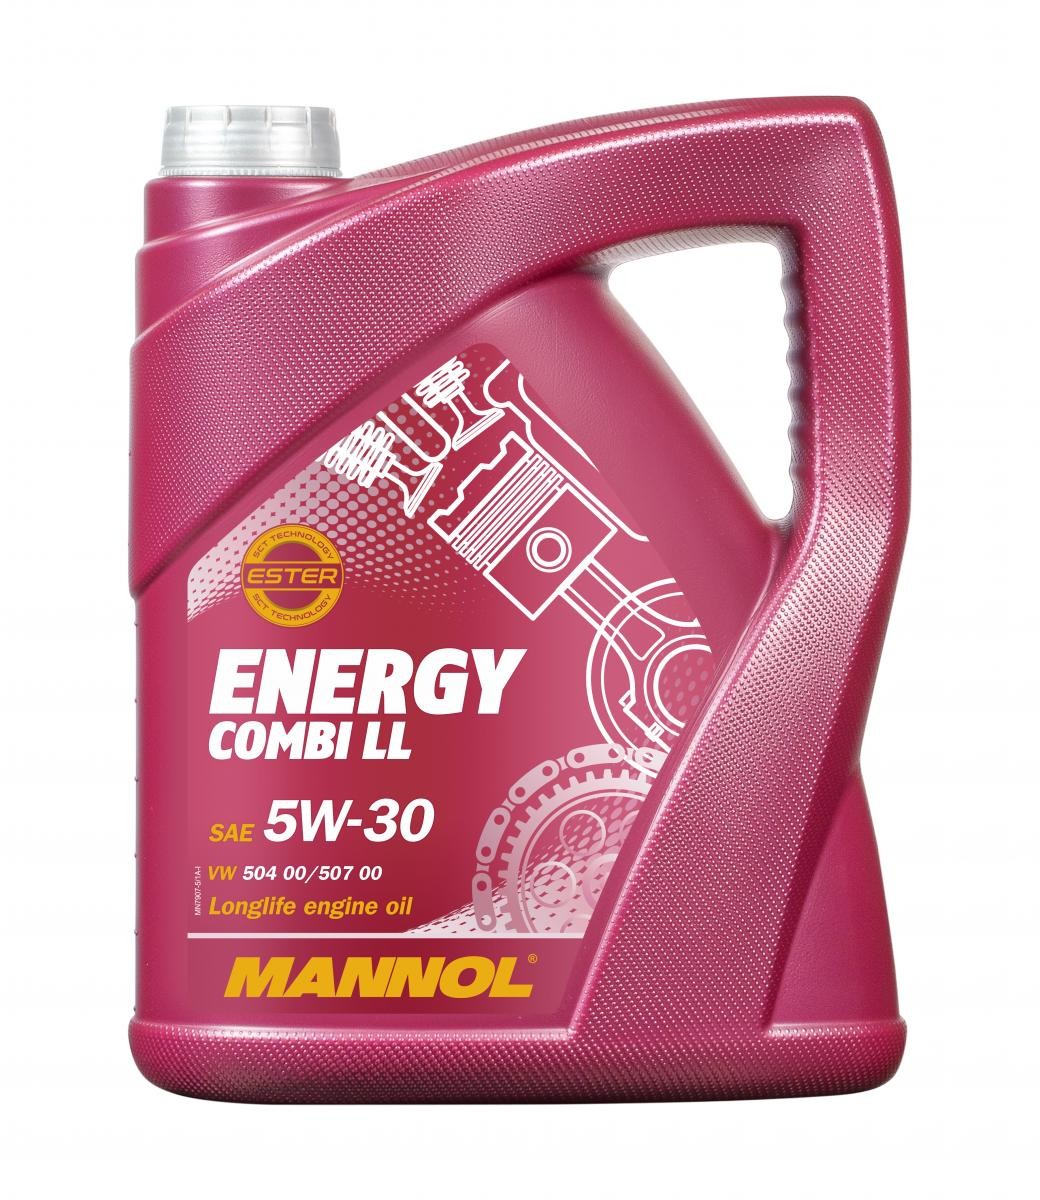 MANNOL ENERGY COMBI LL 5W-30, 5L Olie MN7907-5 koop goedkoop